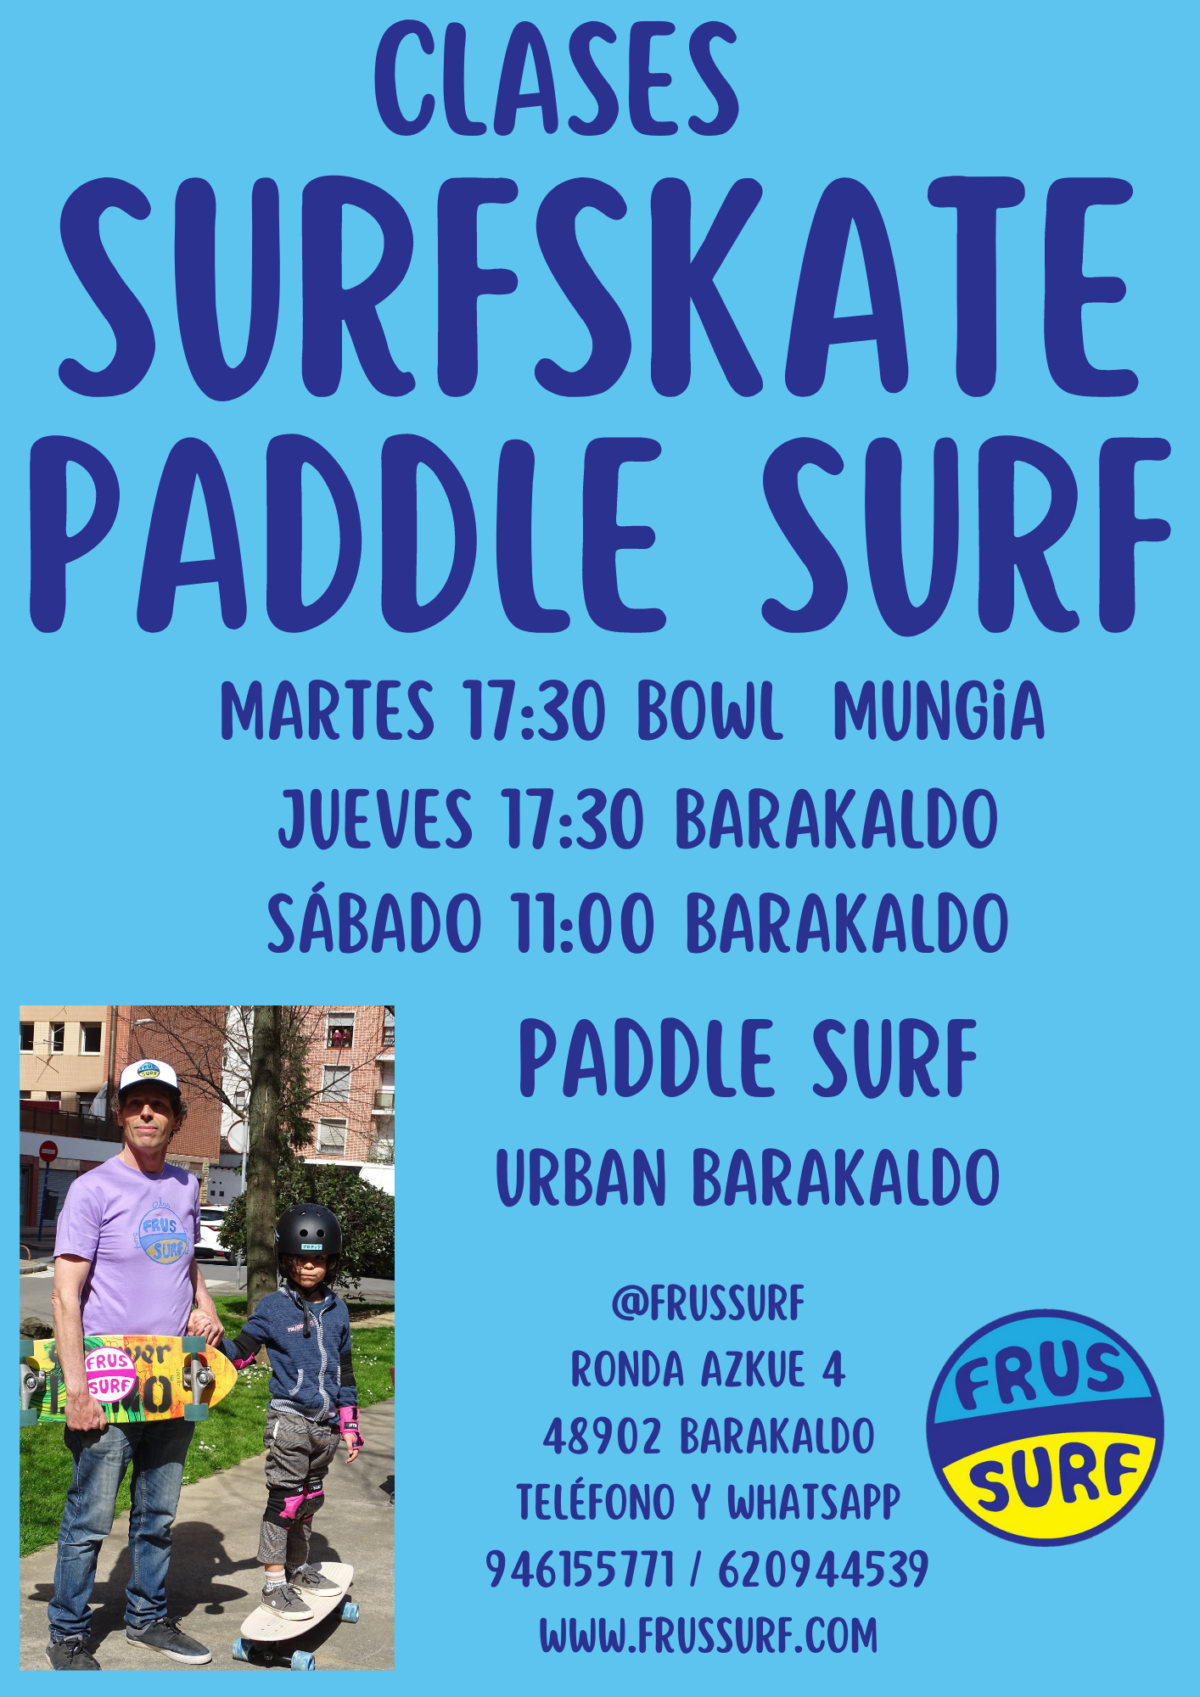 ? Clases de Paddle Surf y Surfskate en Barakaldo